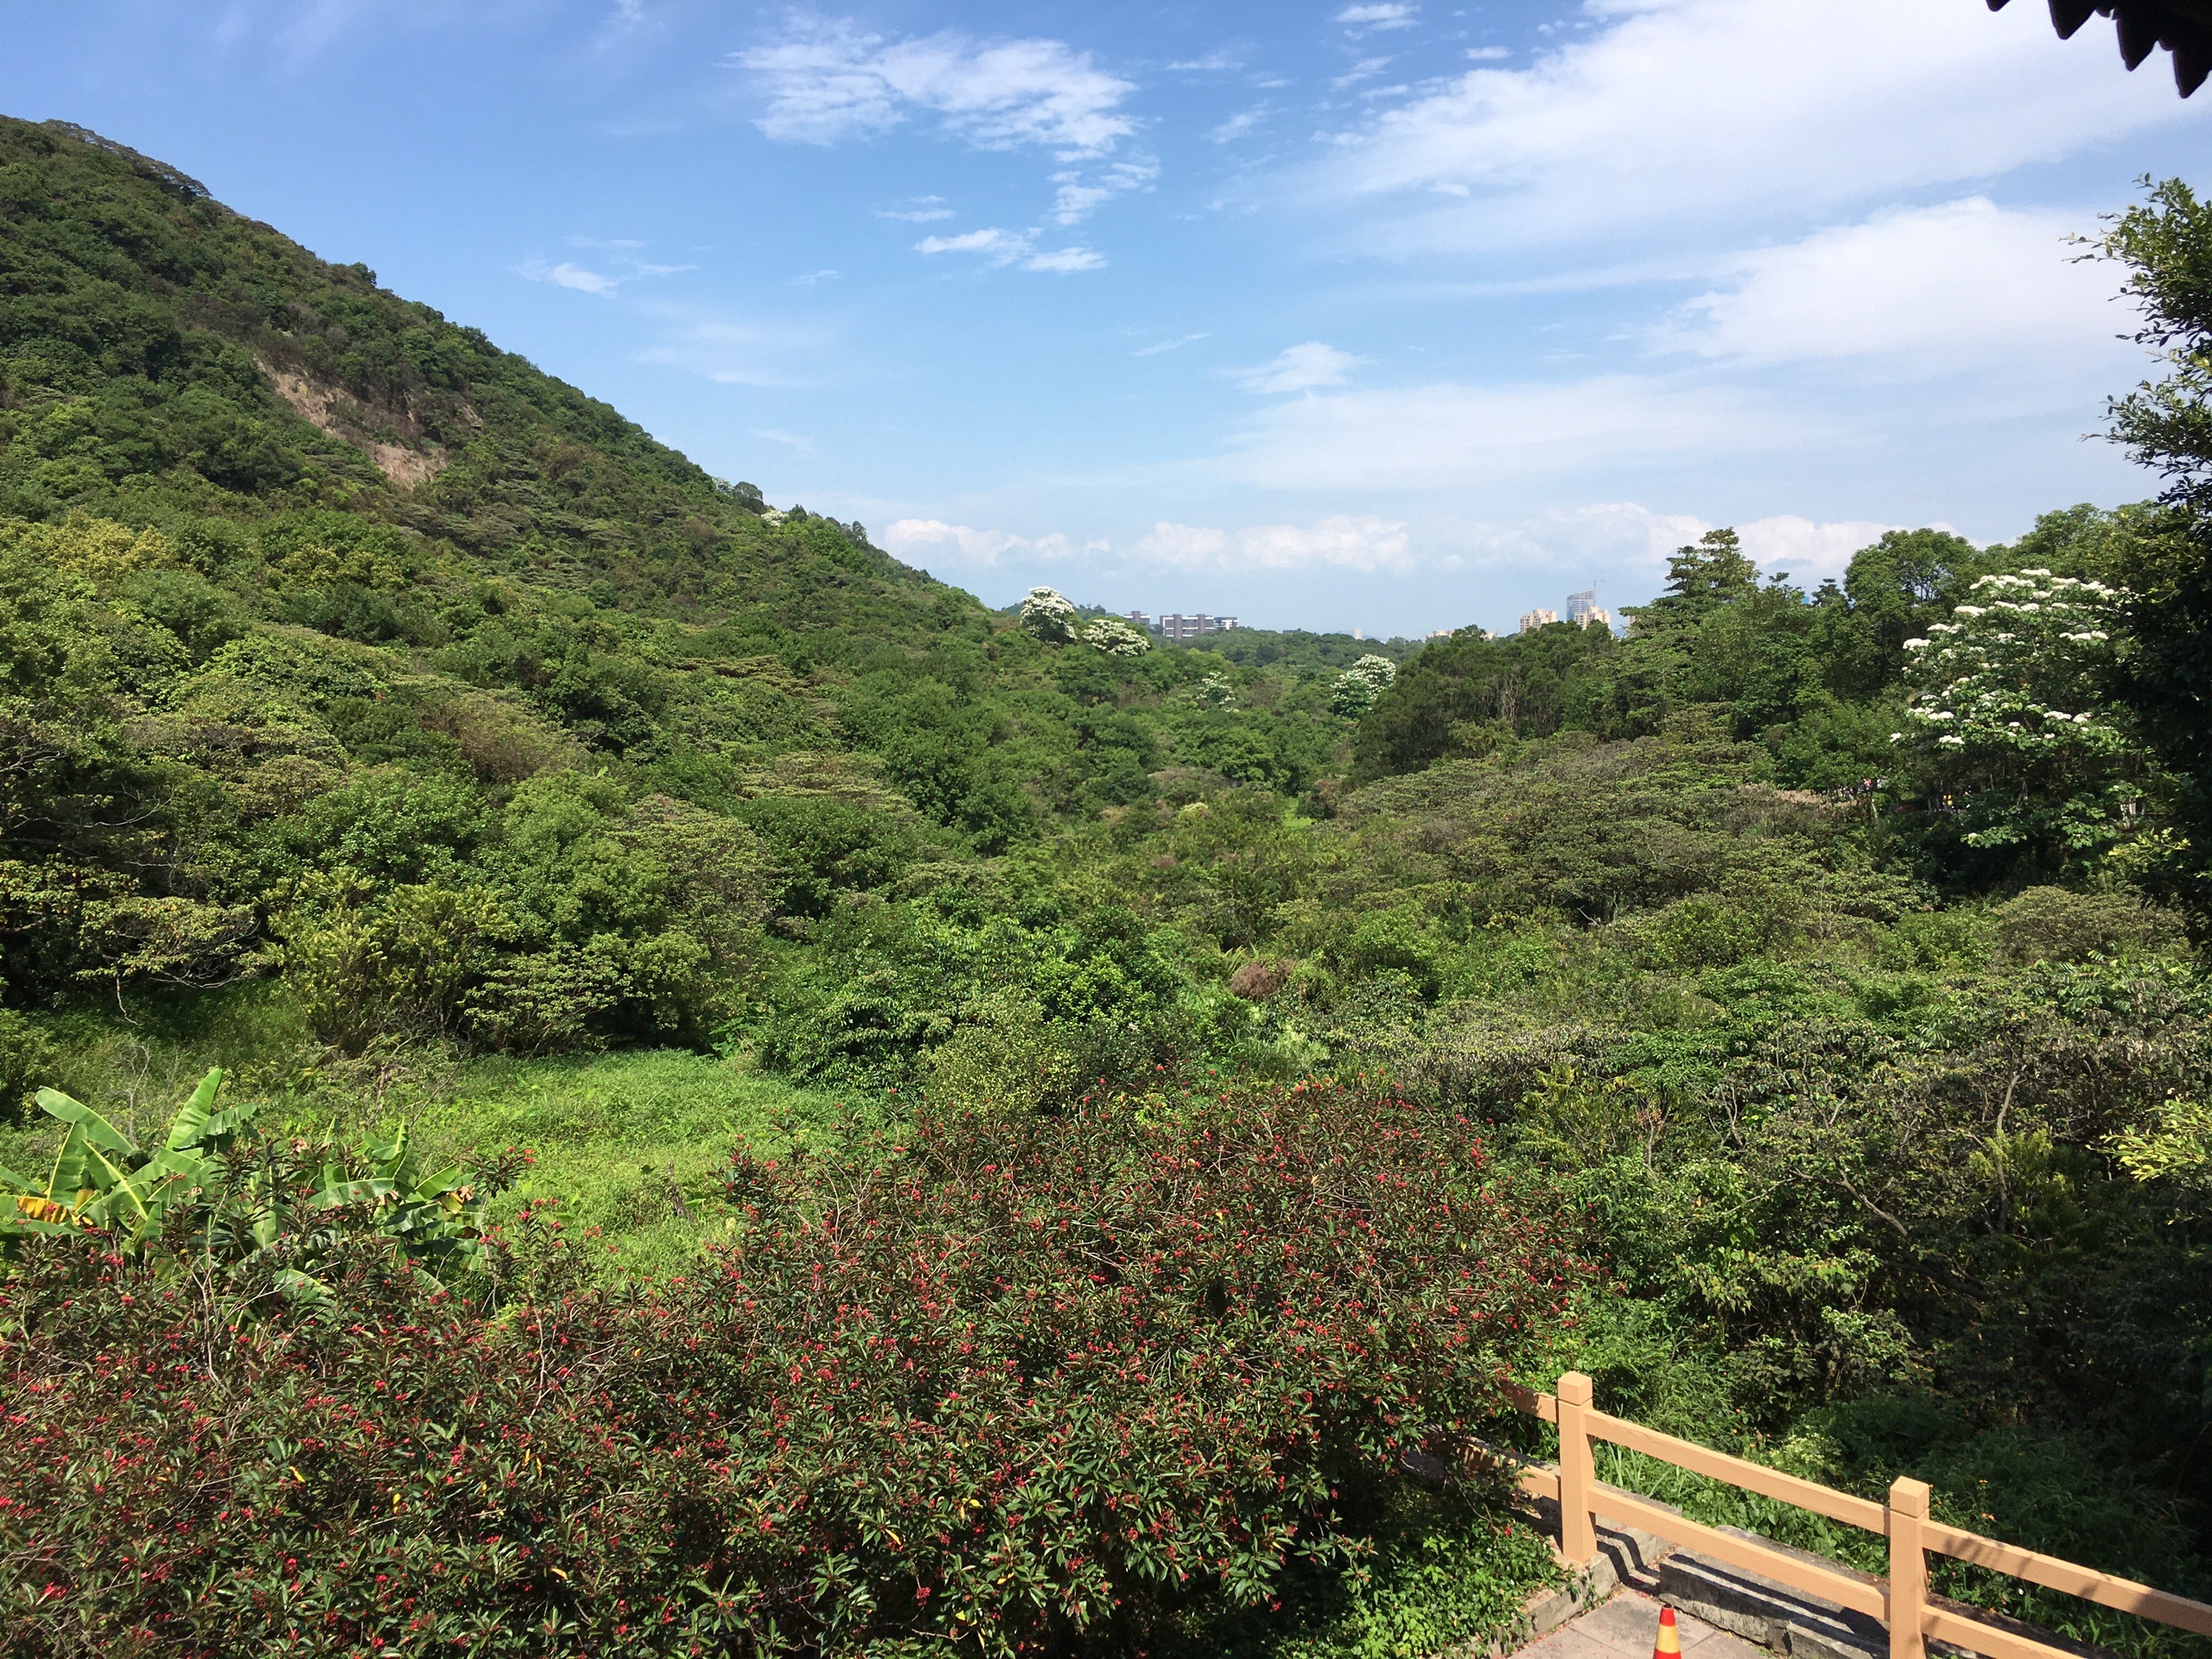 黄山鲁森林公园是广州地区最大的免费森林公园